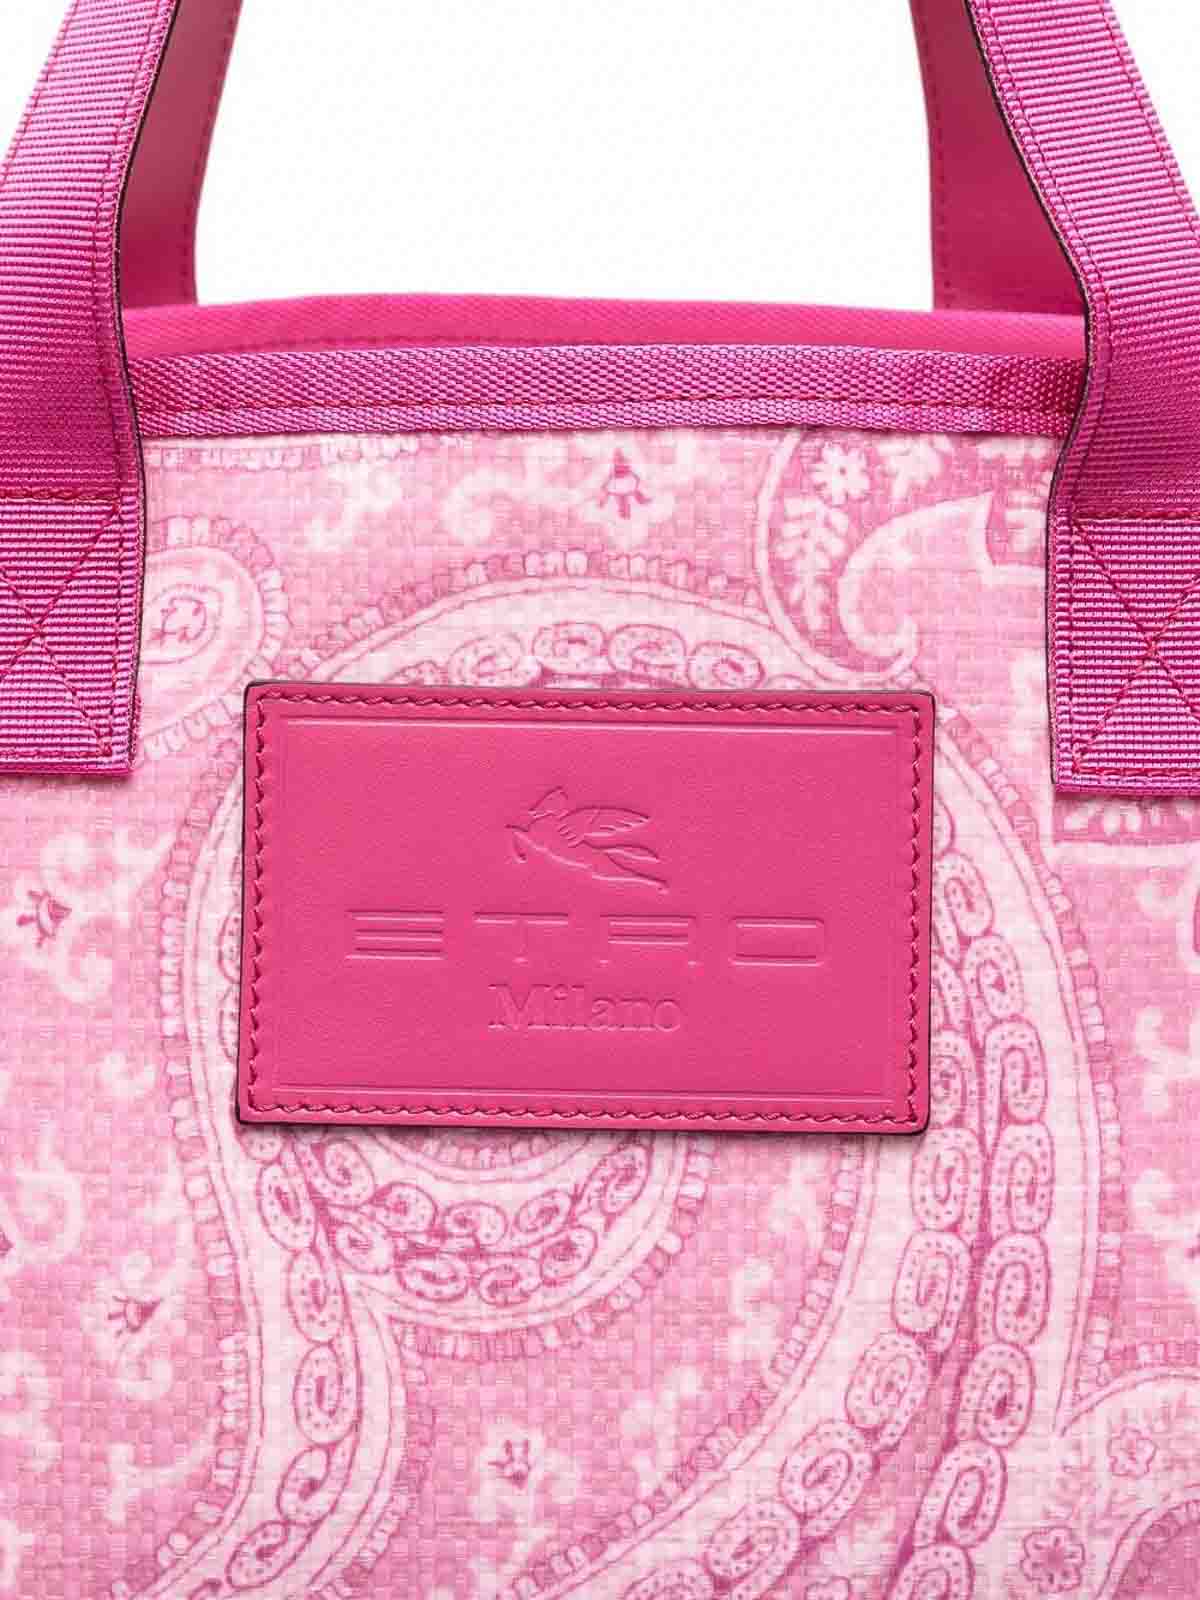 Etro Milano Crossbody Handbag